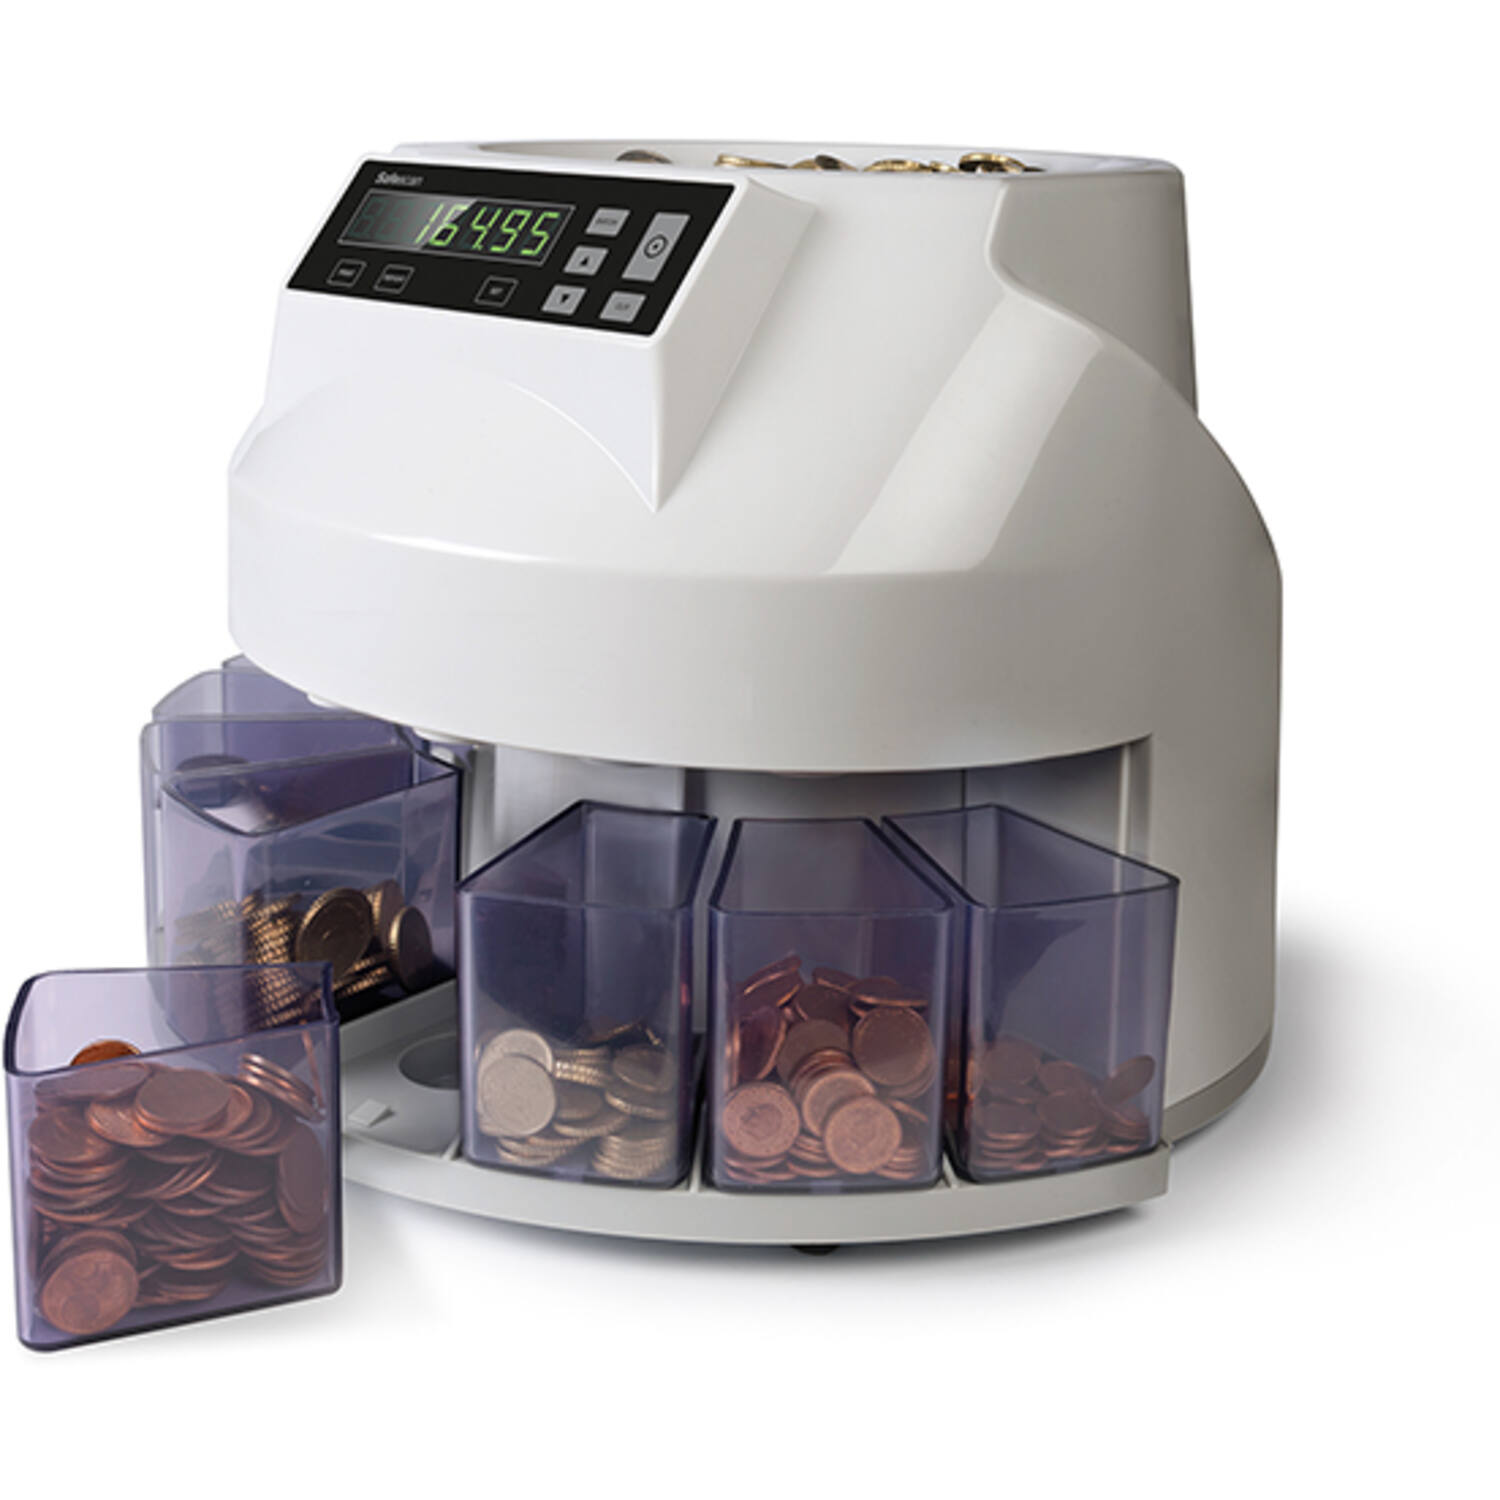 Safescan® Coin counter, type: 1250, grey 1